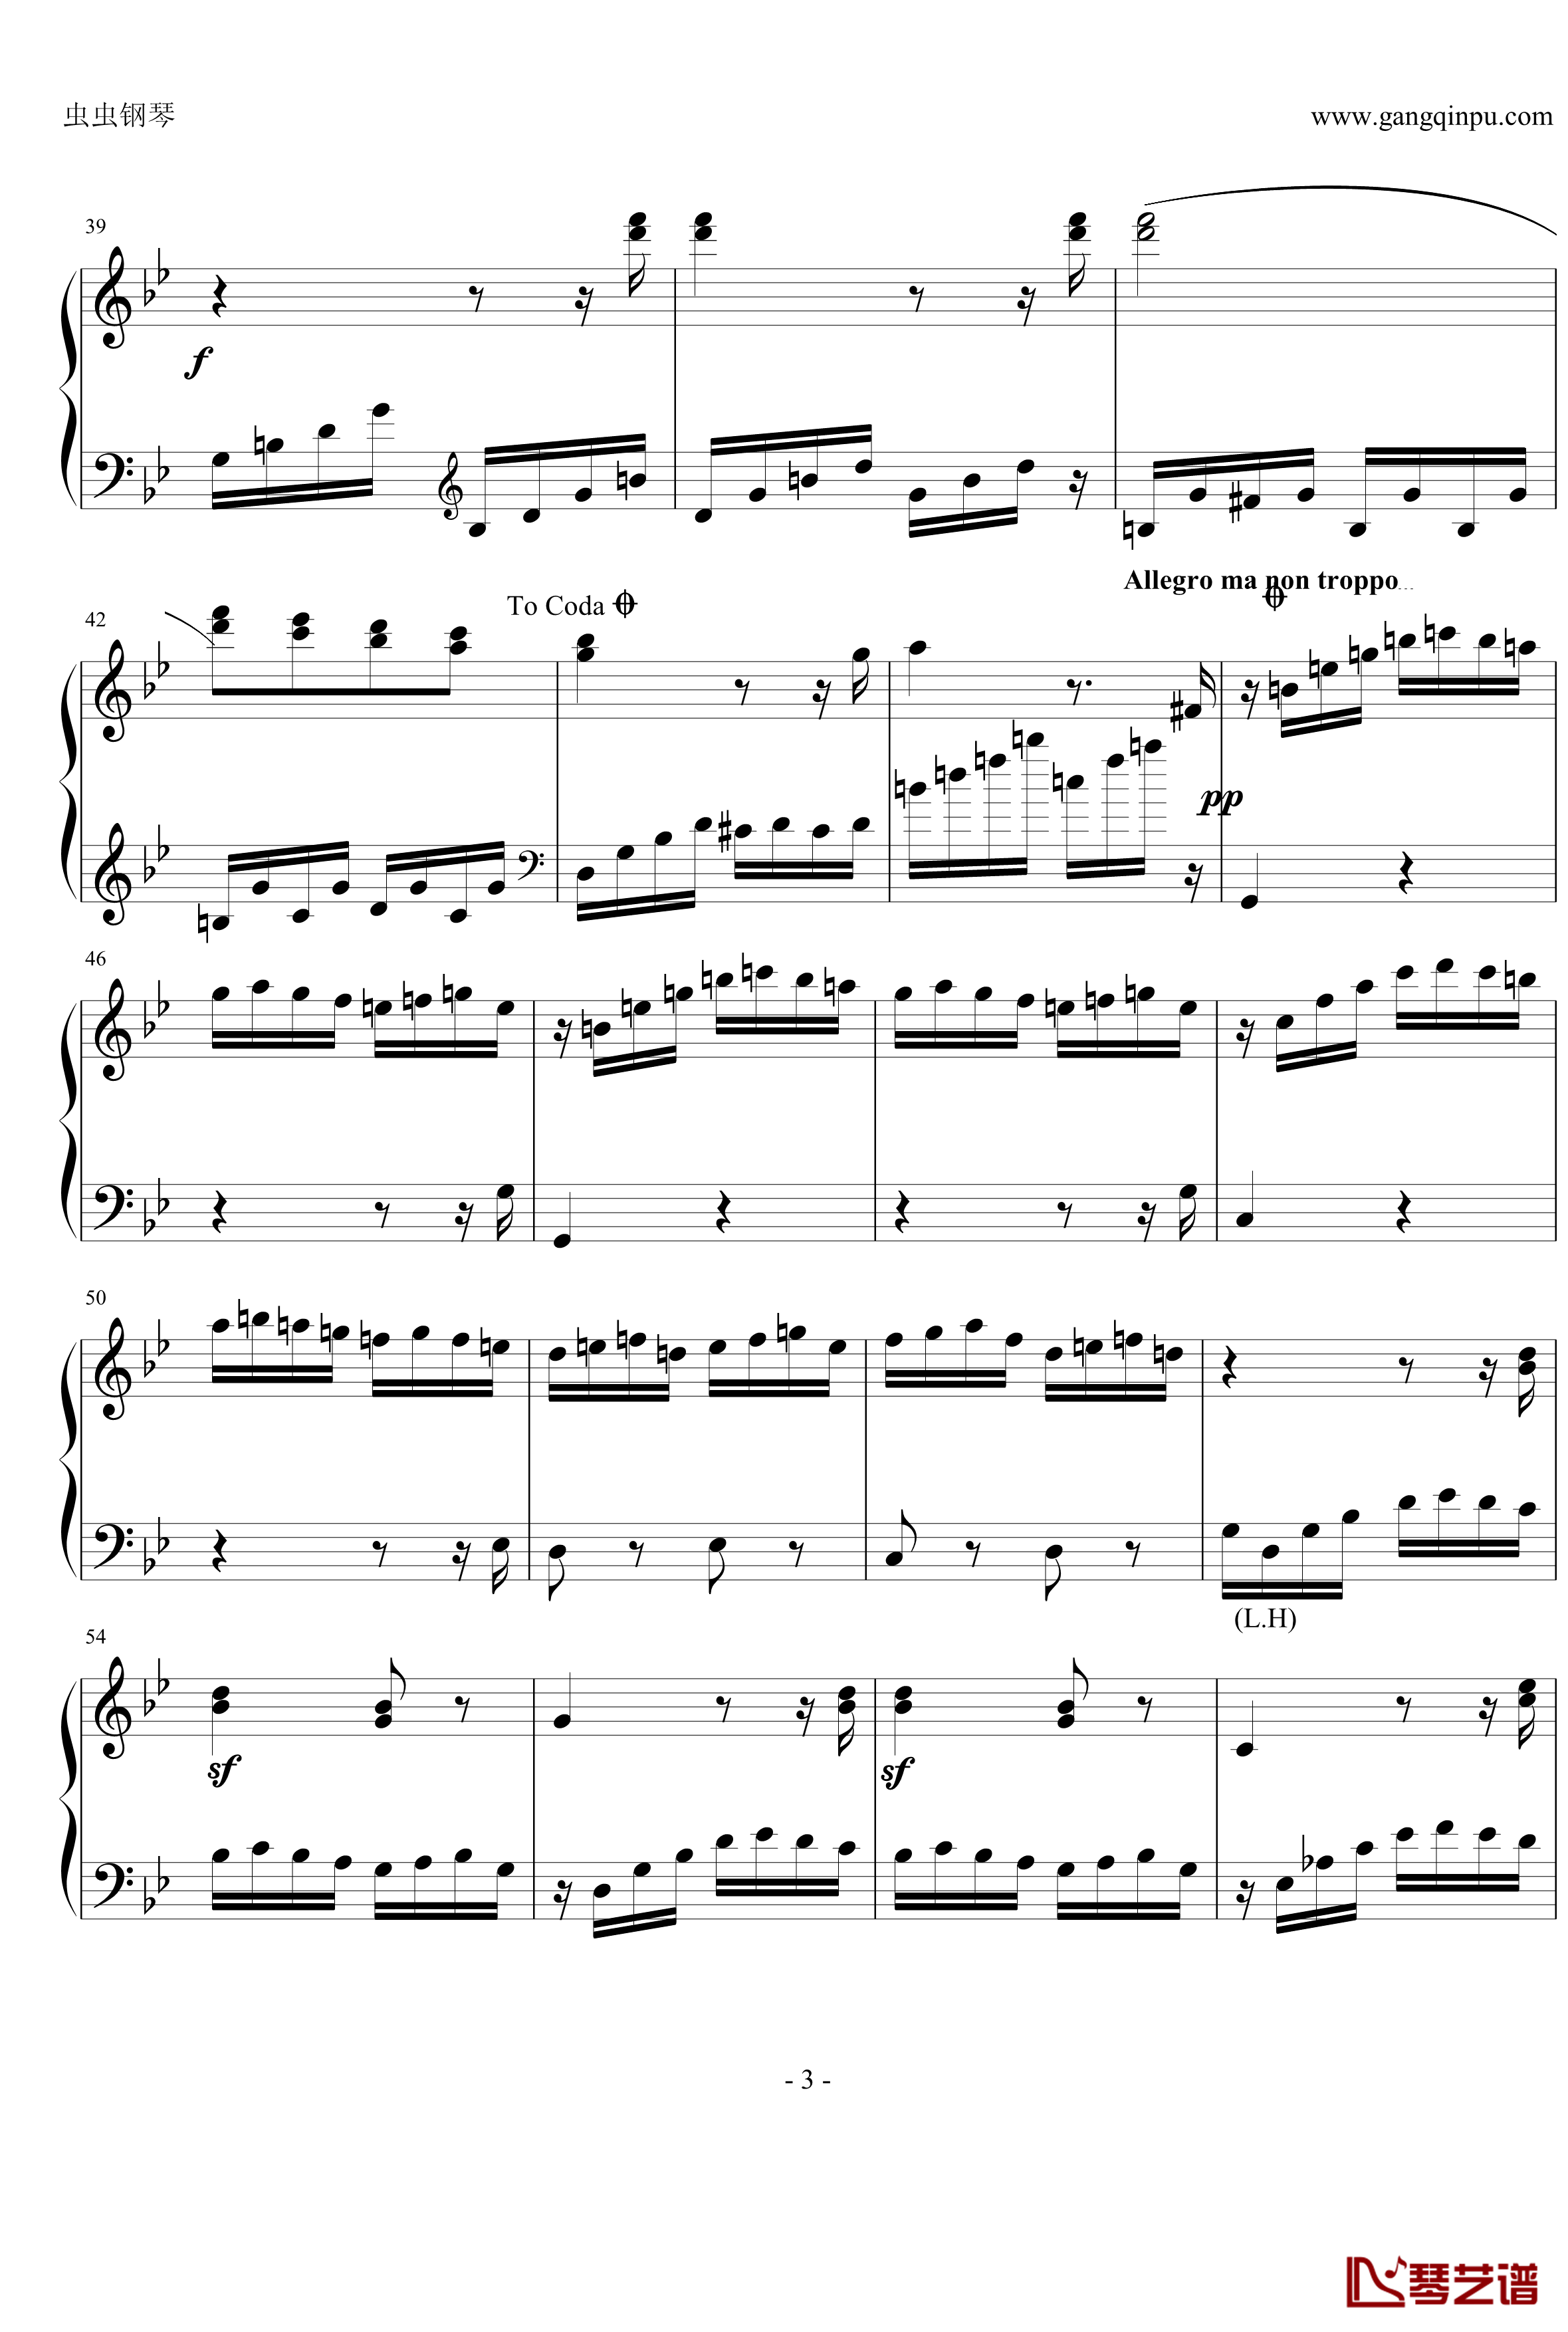 热情奏鸣曲钢琴谱-第三乐章简化改编版-贝多芬-beethoven3